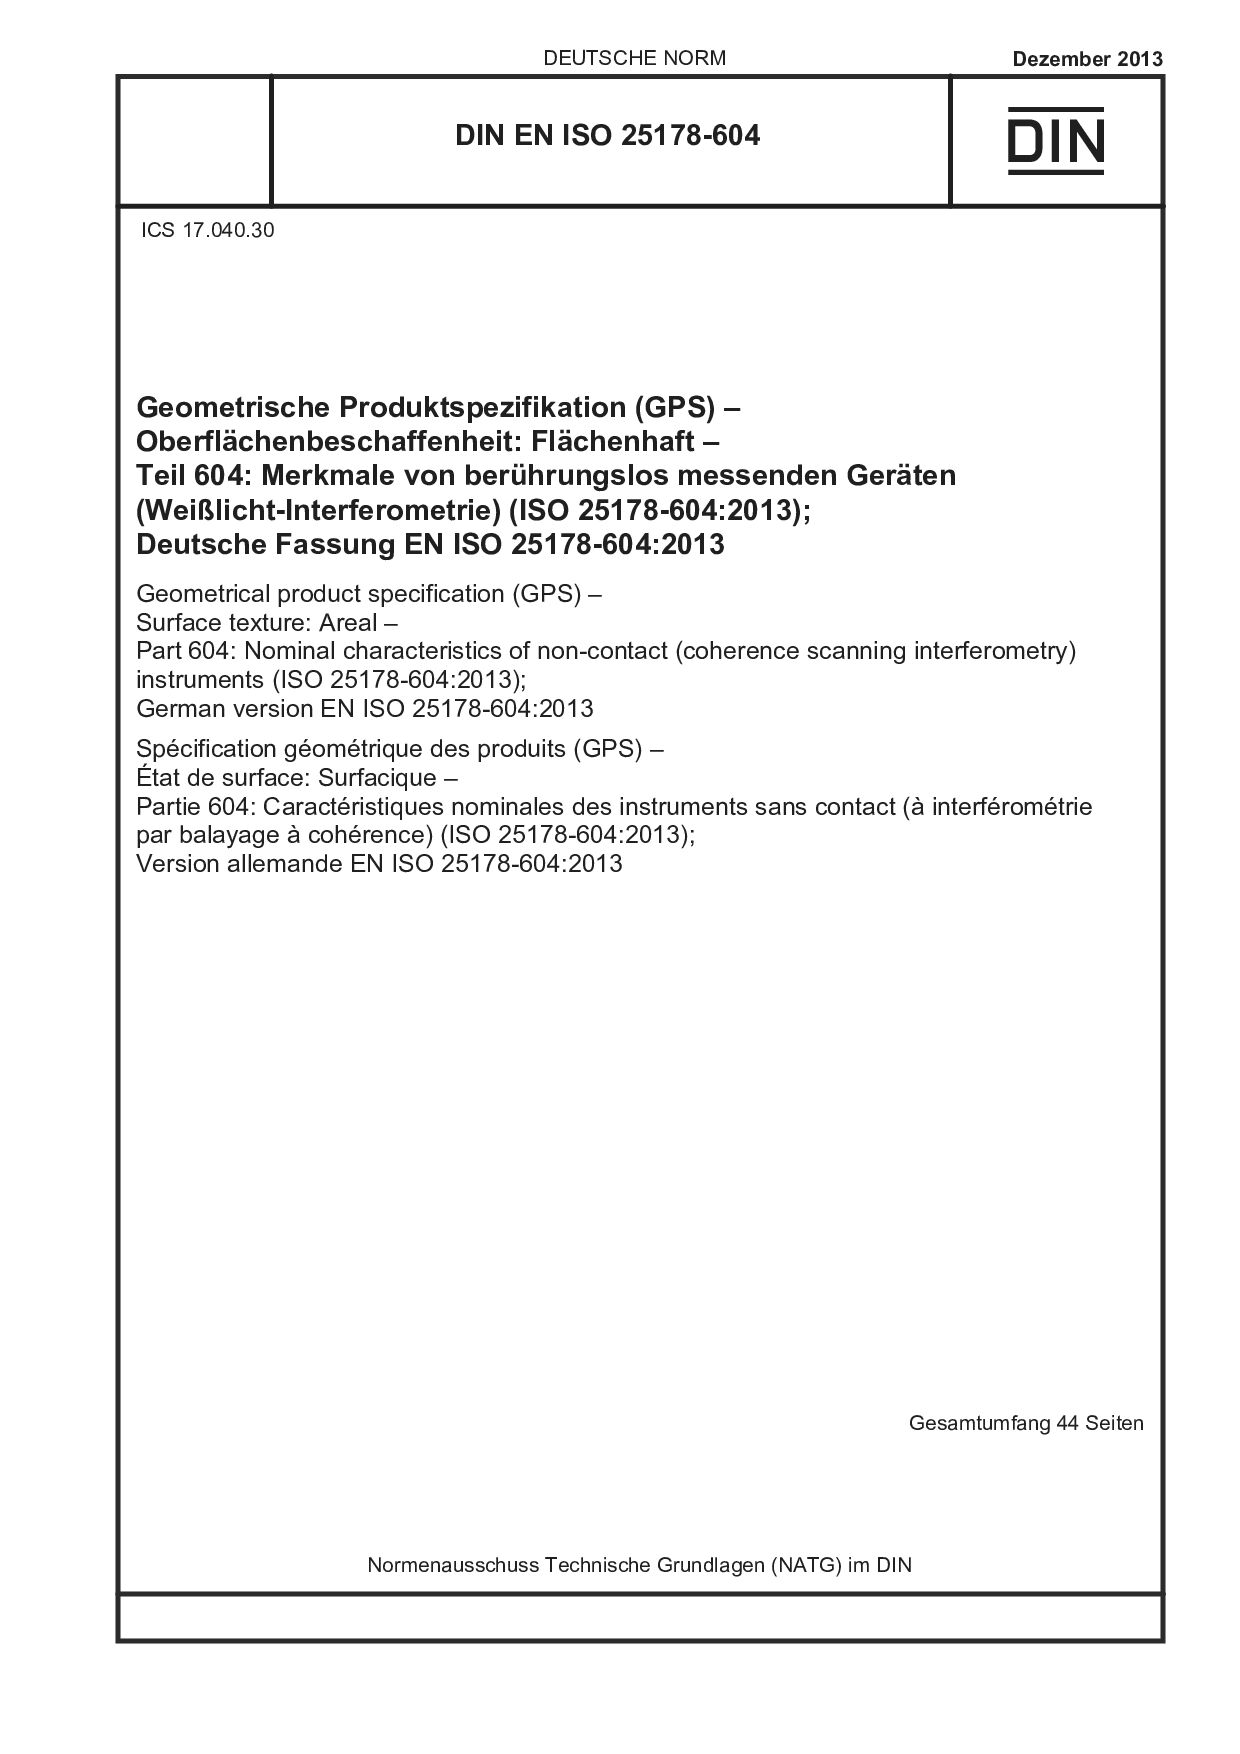 DIN EN ISO 25178-604:2013-12封面图